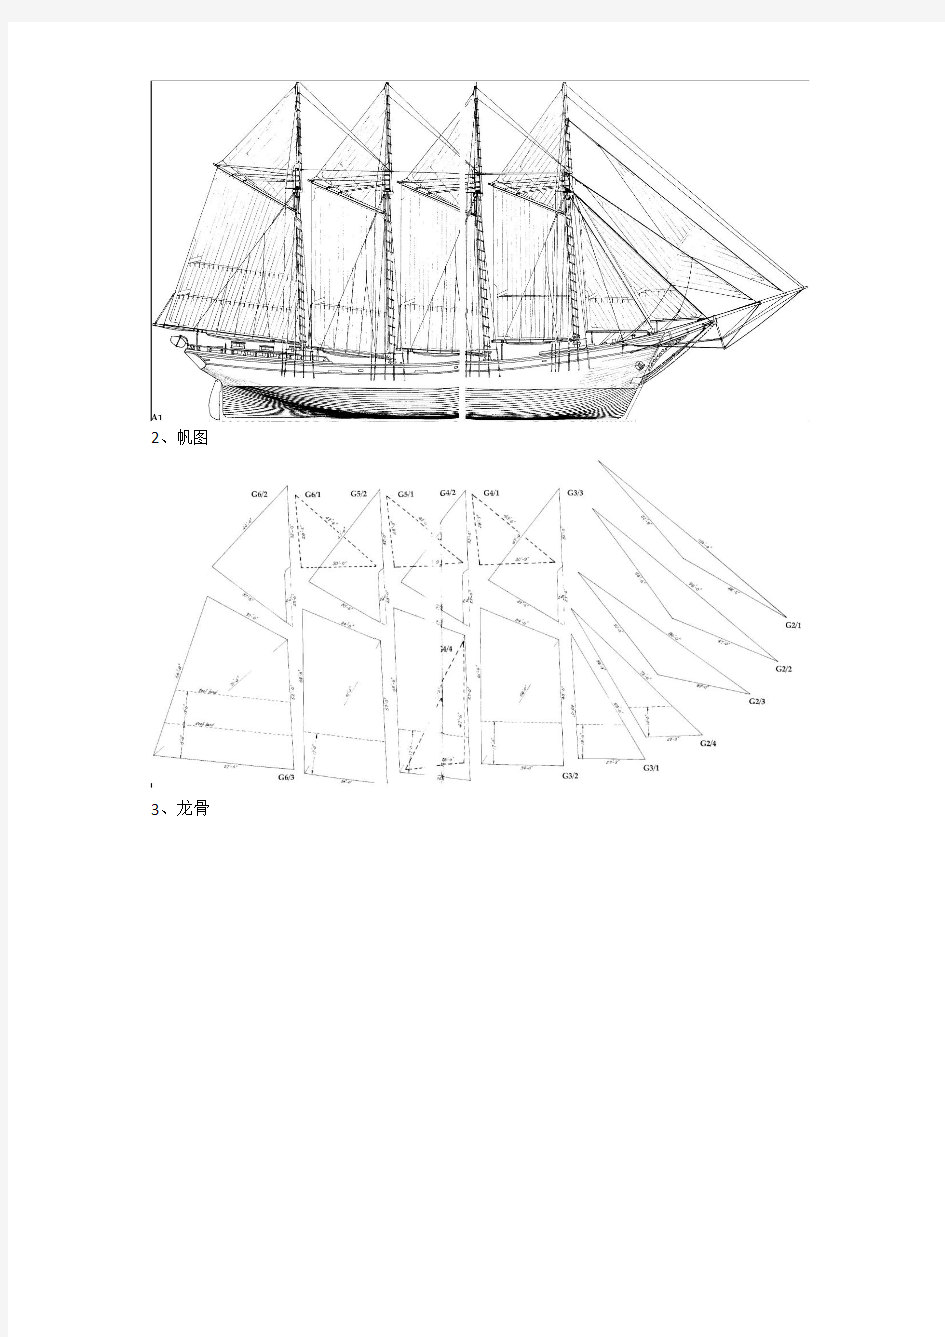 (原创)工艺瓶(帆船)catia建模实例+详细步骤